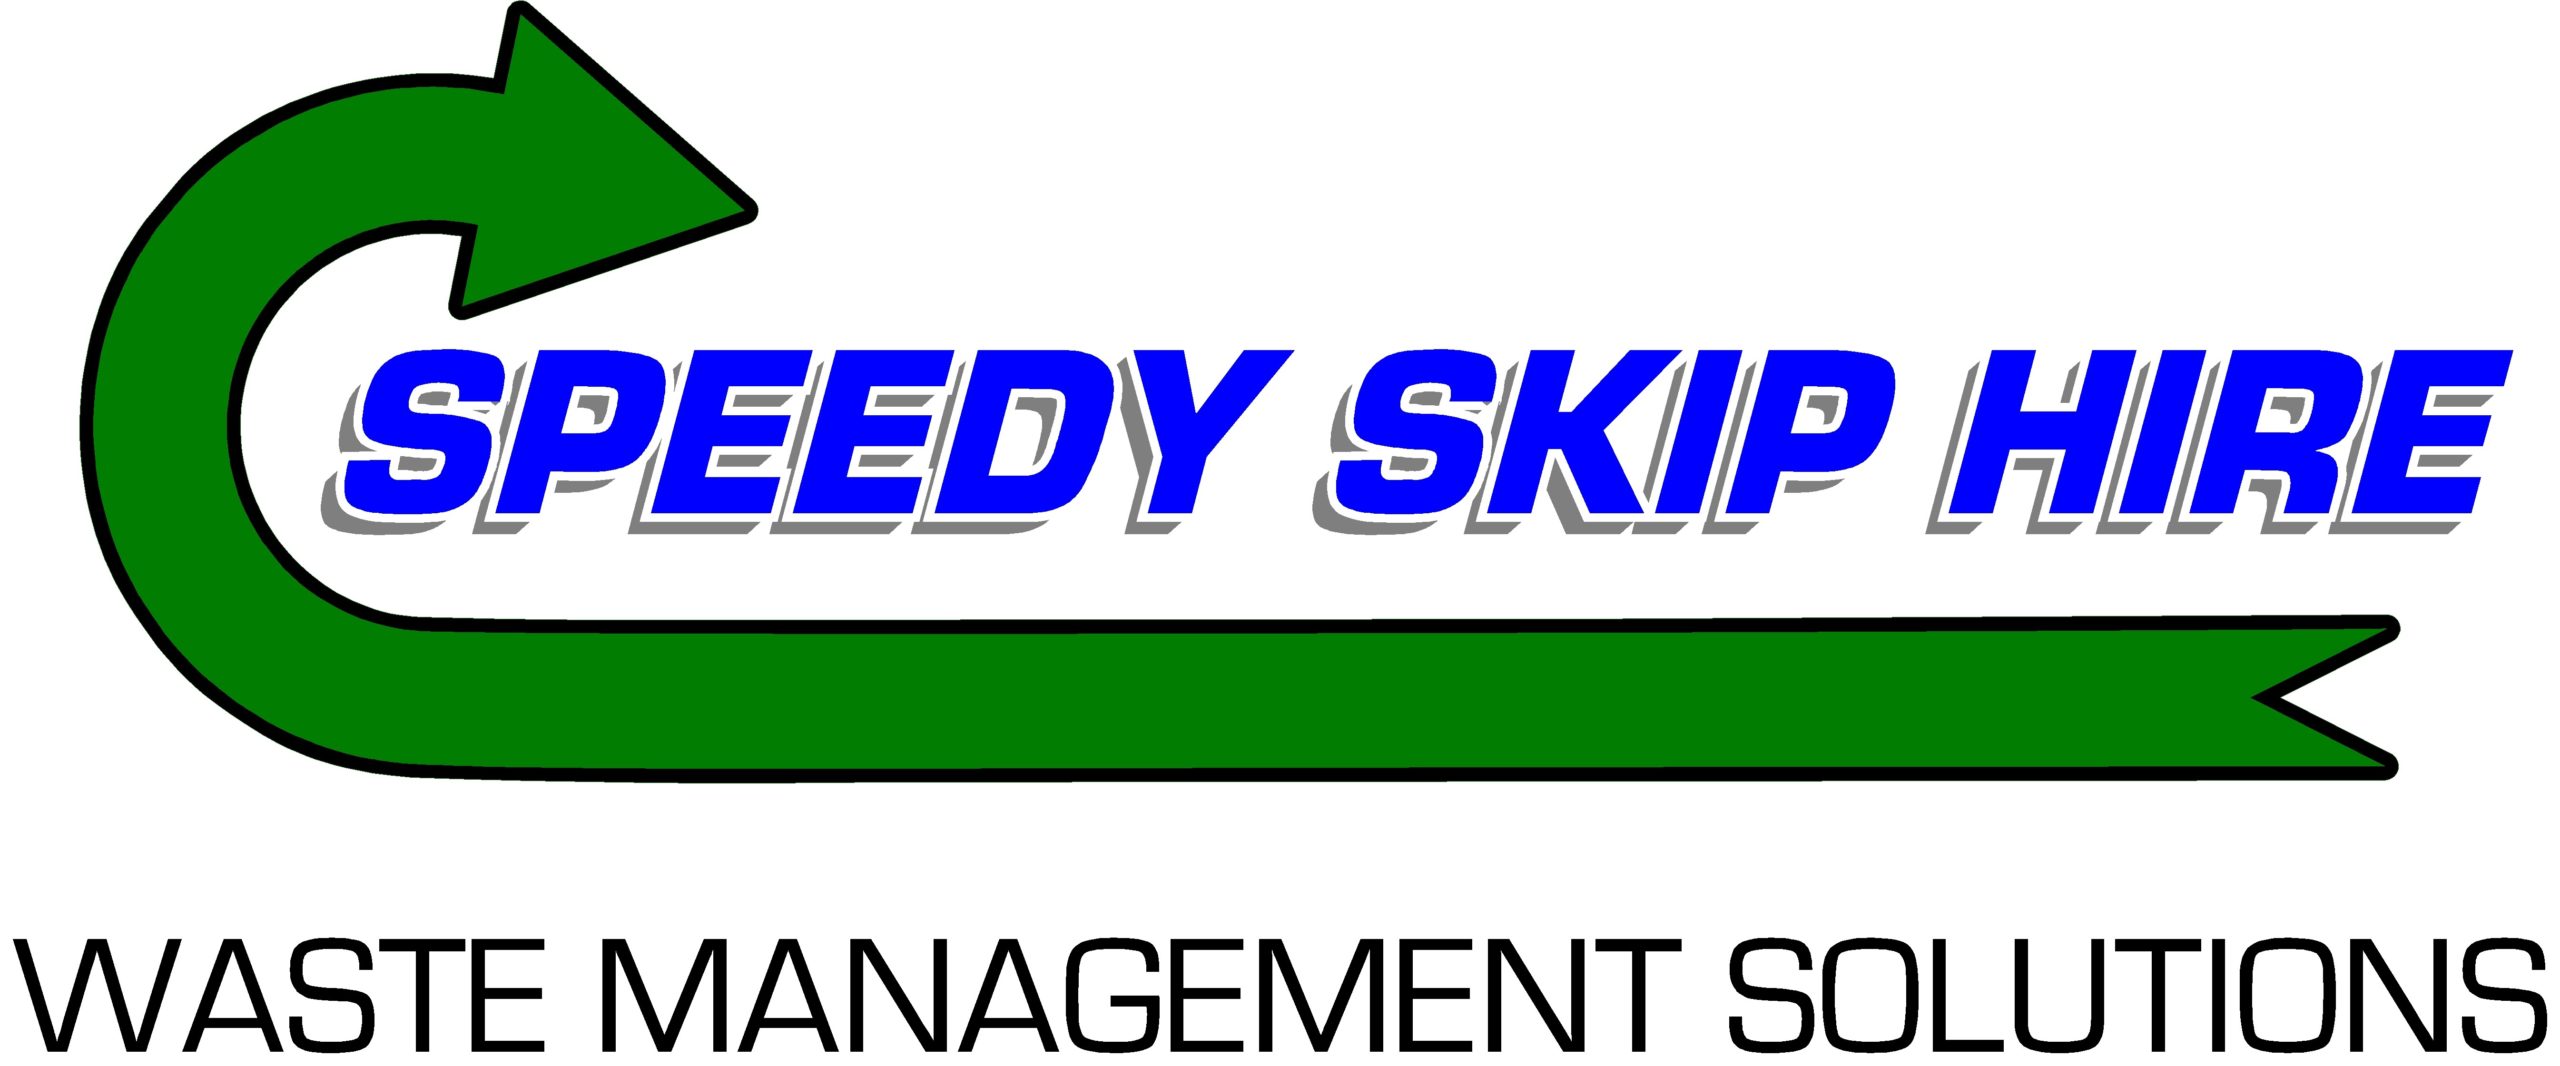 Speedy Waste Management Solutions